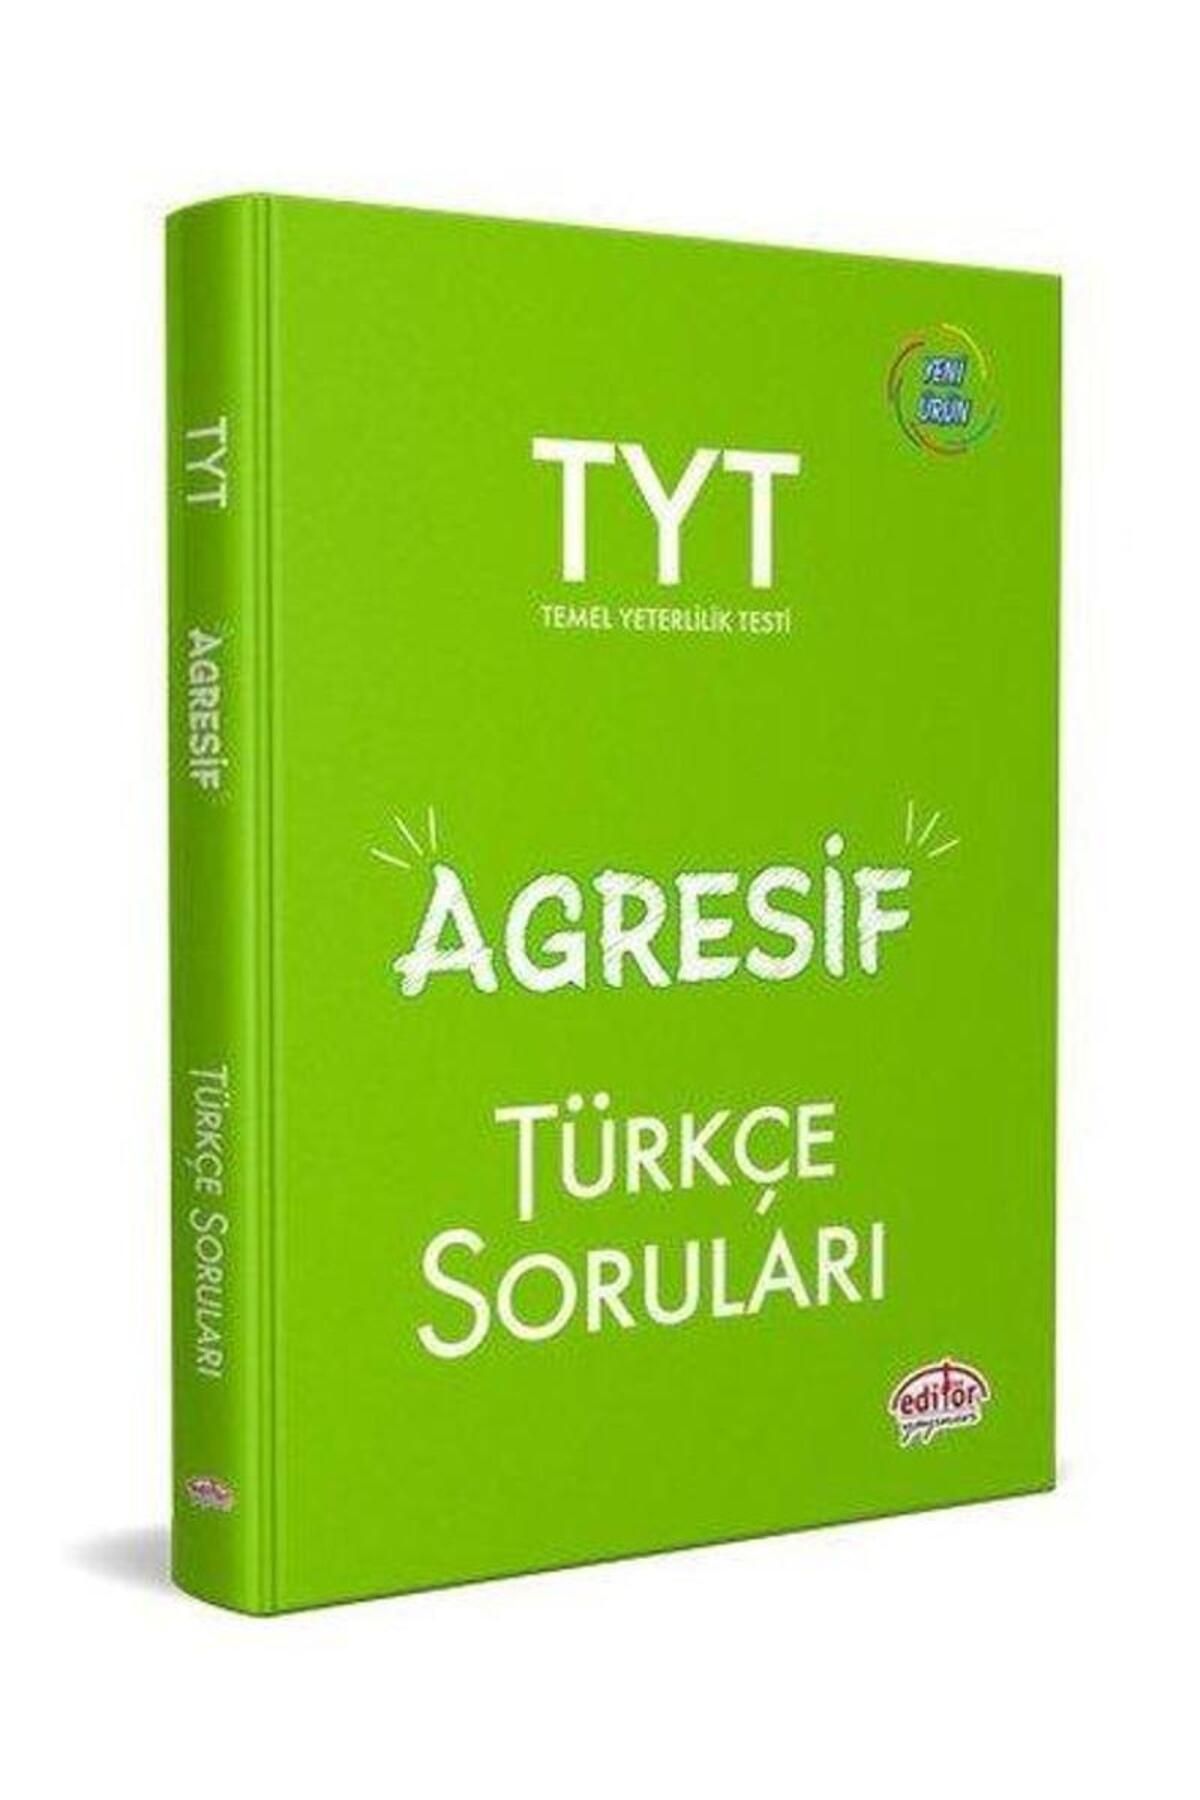 Editör Yayınları TYT Agresif Türkçe Soruları